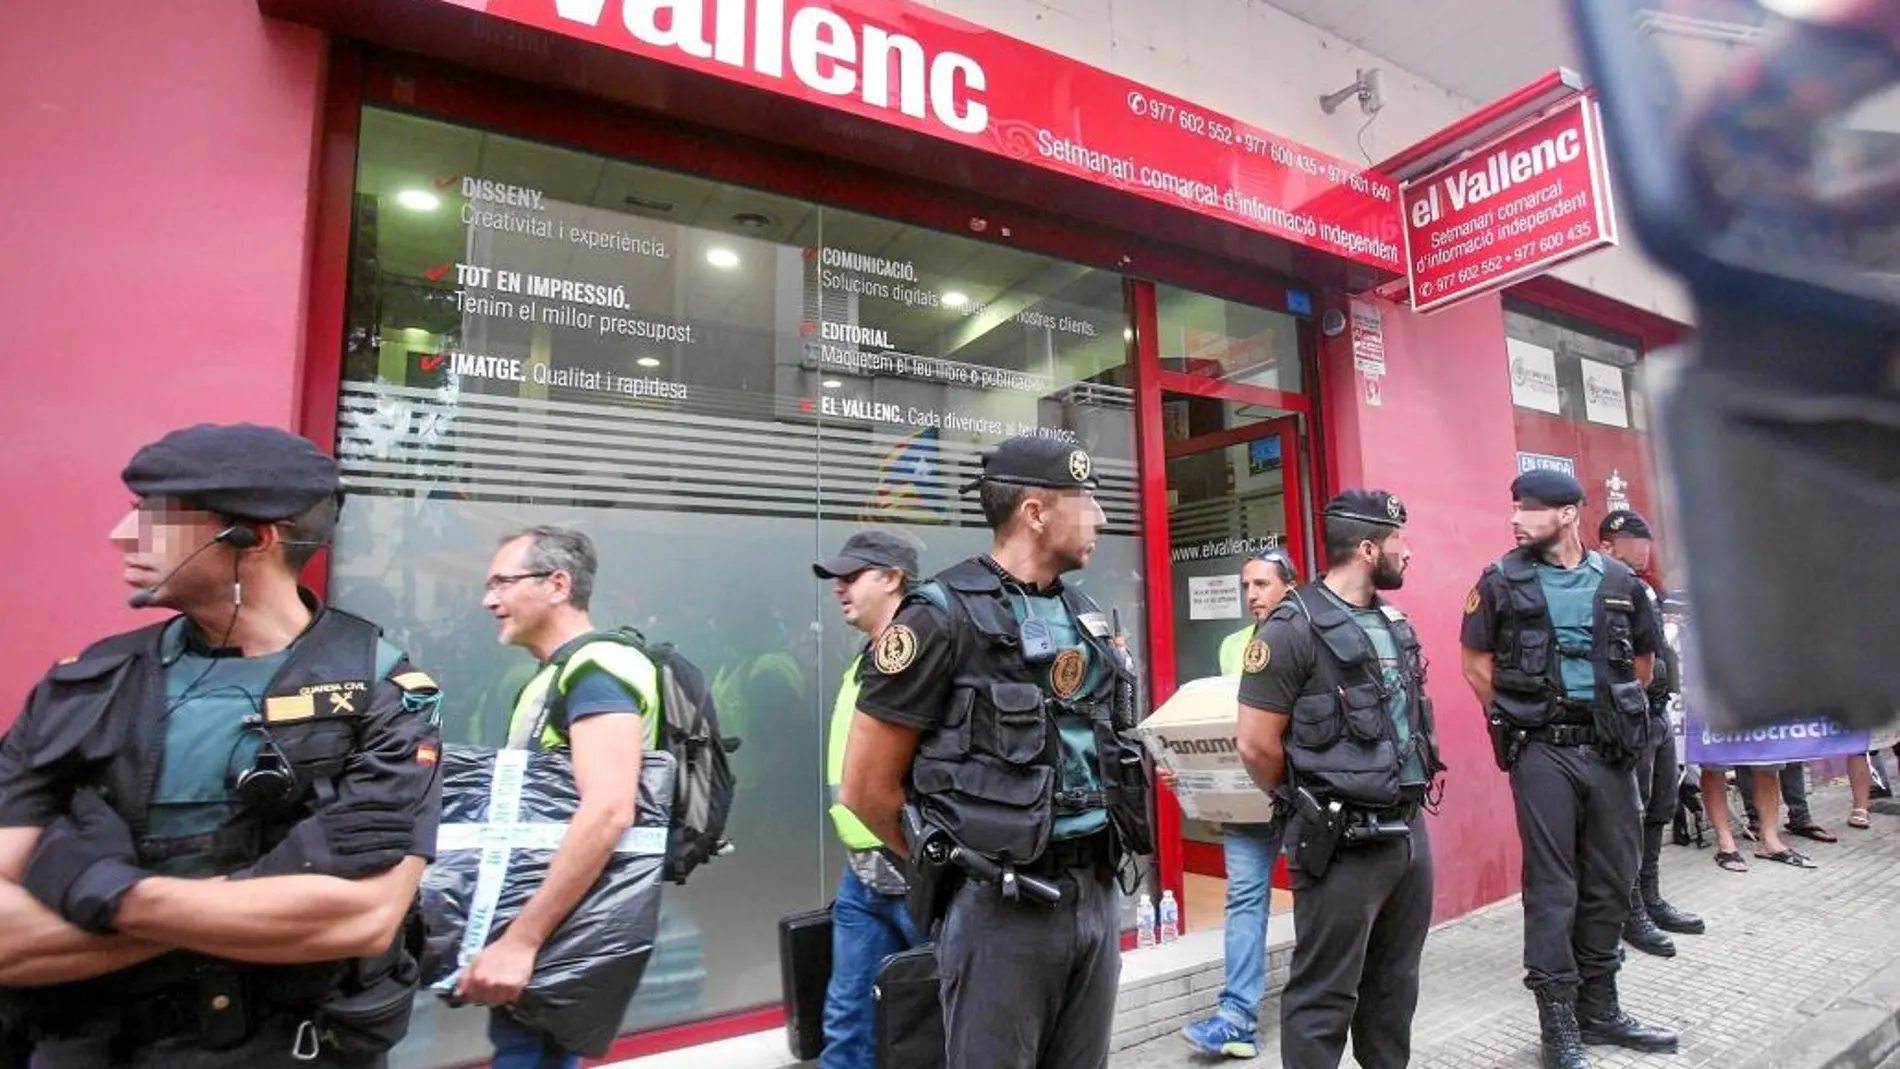 Efectivos de la guardia civil transportan cajas a su salida del semanario El Vallenc